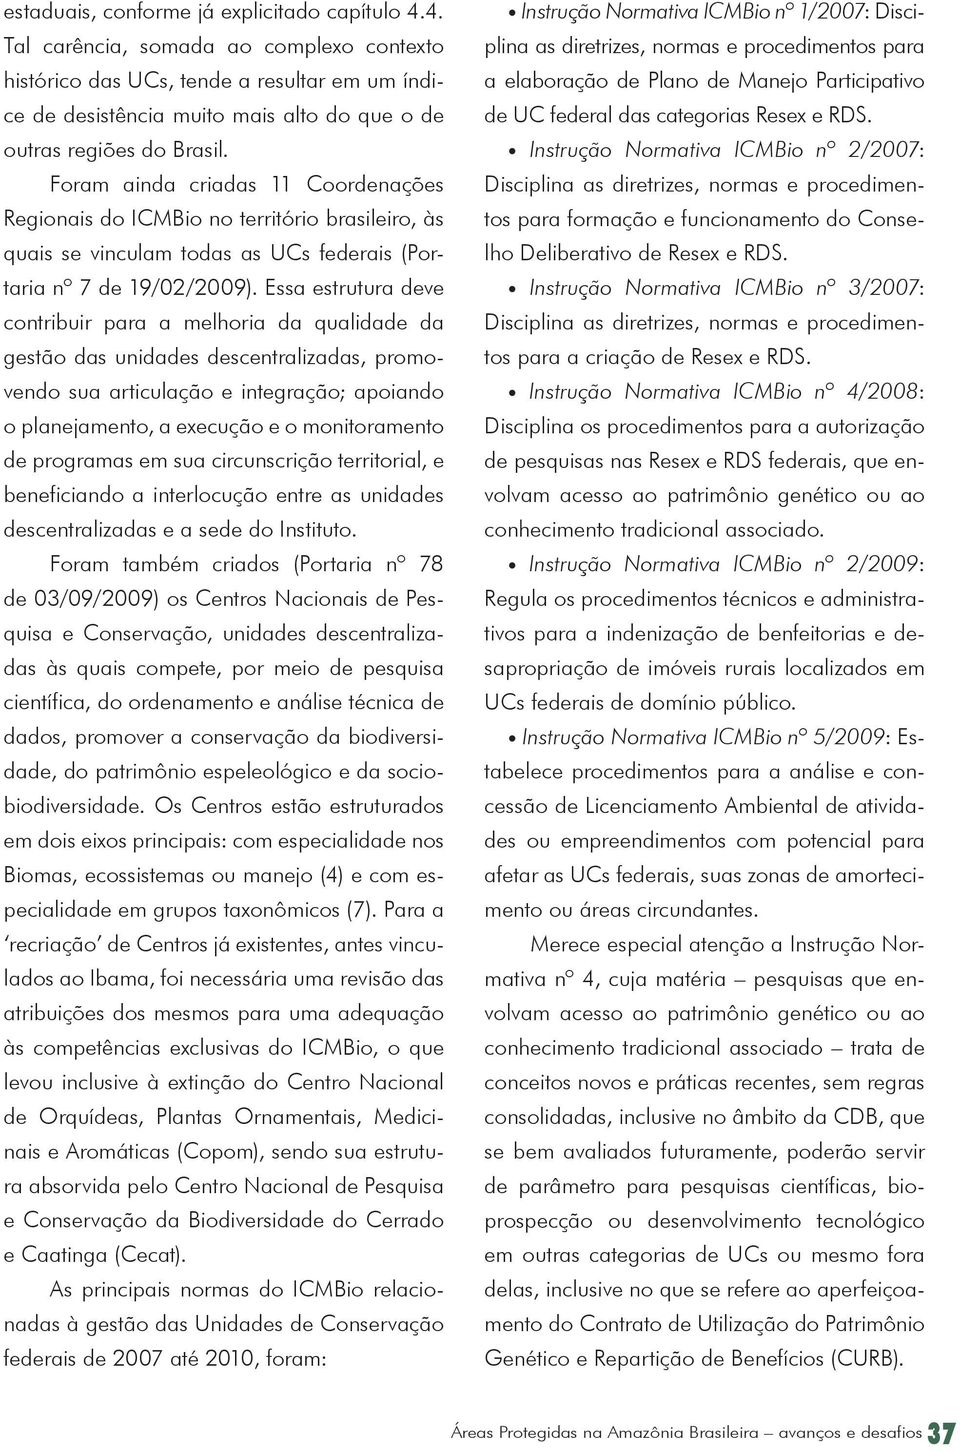 Foram ainda criadas 11 Coordenações Regionais do ICMBio no território brasileiro, às quais se vinculam todas as UCs federais (Portaria nº 7 de 19/02/2009).